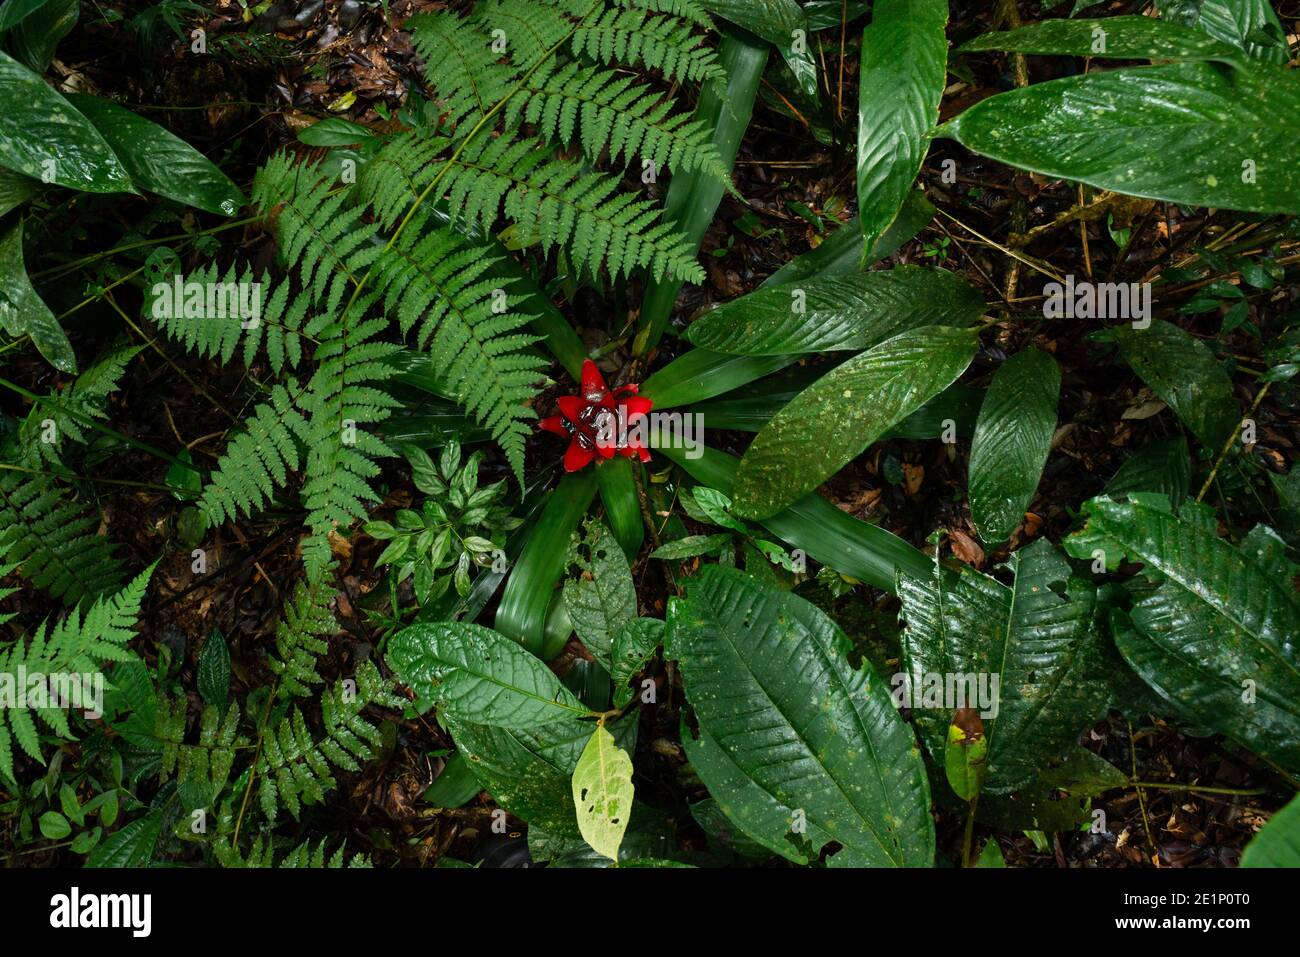 Lush vegetation at the forest floor of the Atlantic Rainforest of SE Brazil Stock Photo